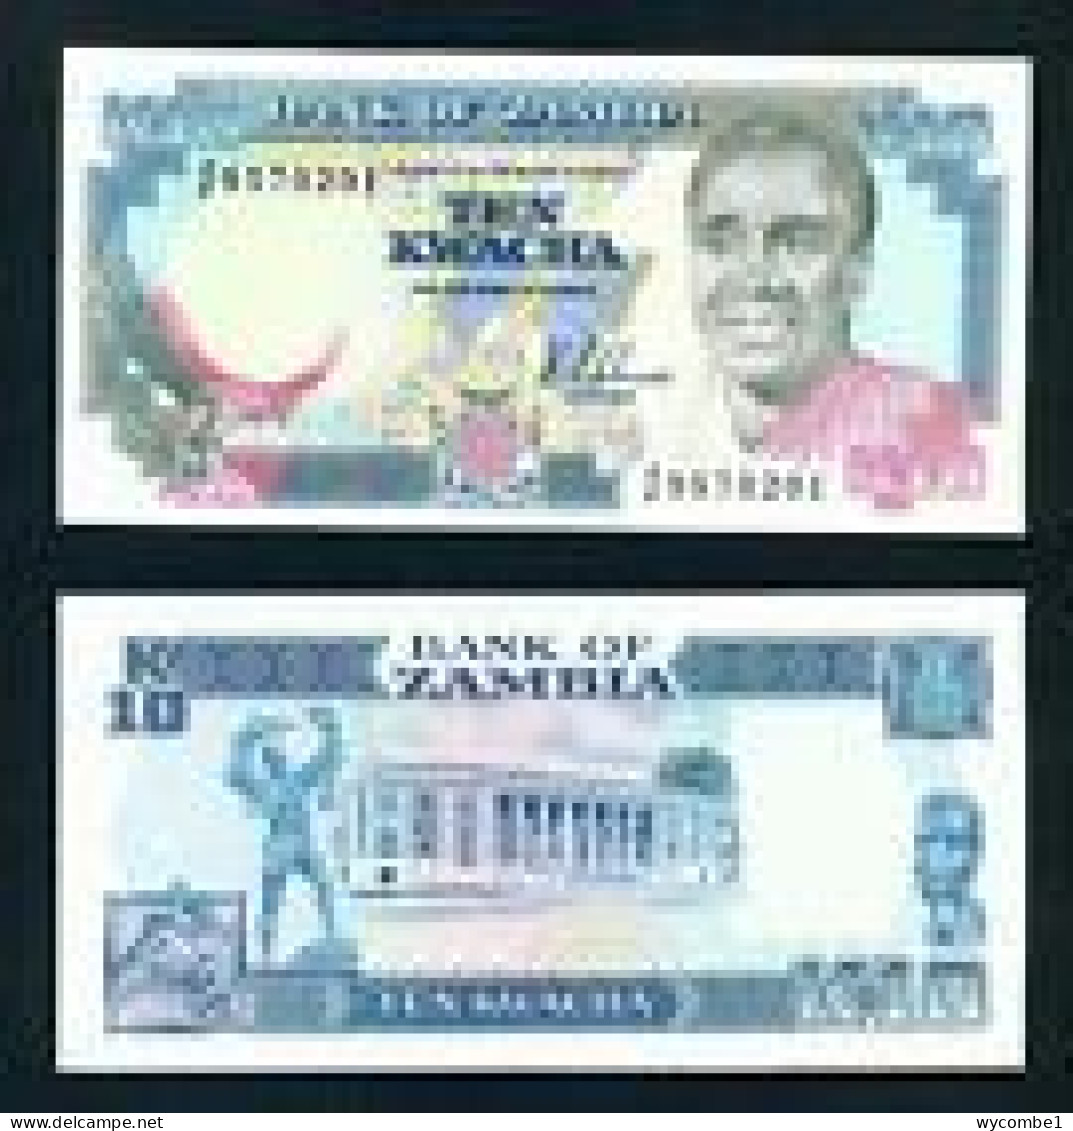 ZAMBIA -  1989 10 Kwacha UNC  Banknote - Zambie